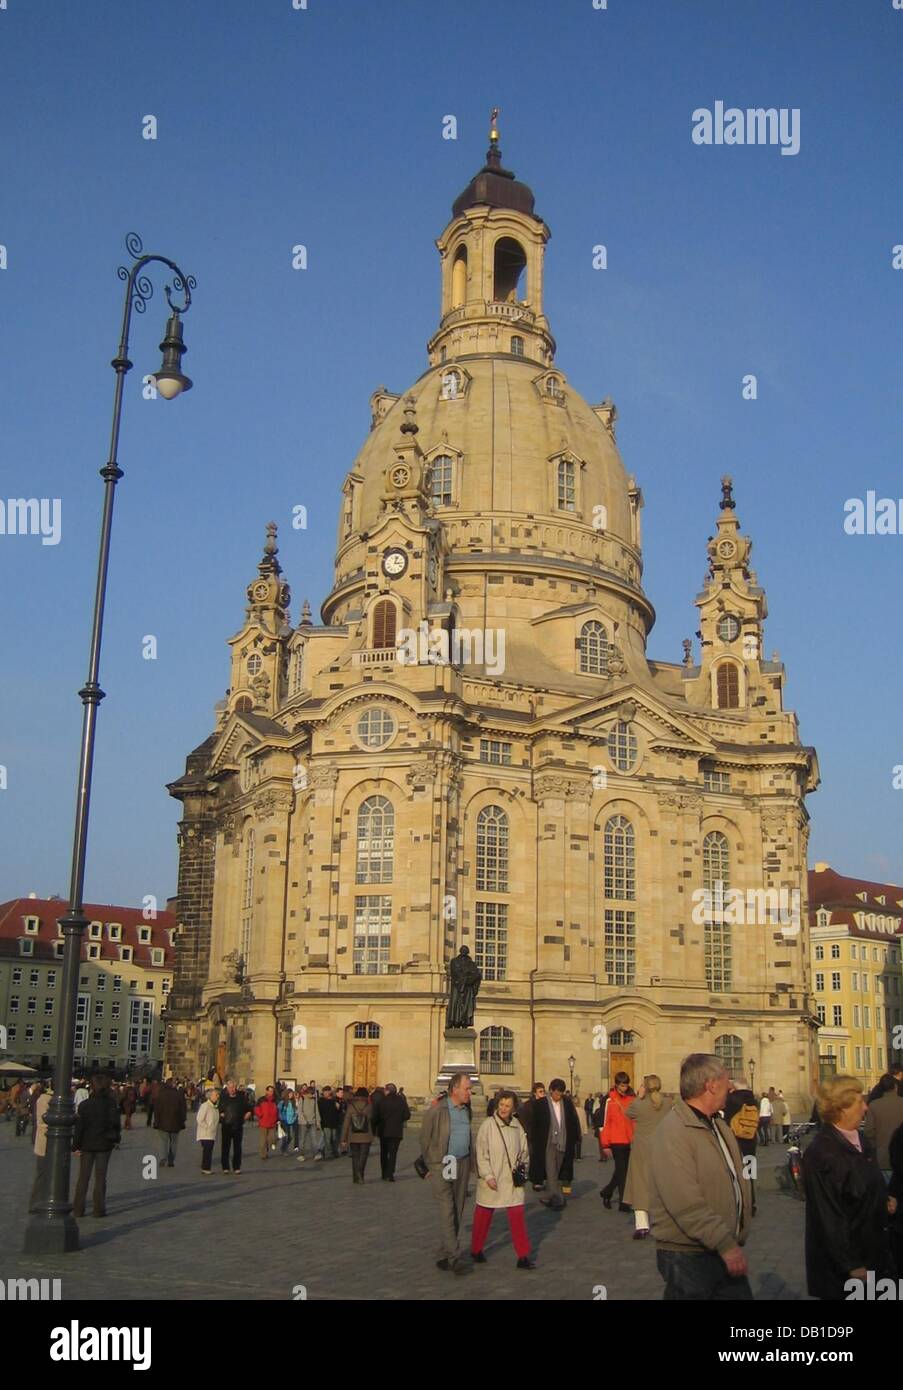 La foto mostra la Frauenkirche di Dresda protestante della Chiesa che fu distrutta durante la II Guerra Mondiale e ricostruita tra il 1994 e il 2005 con donazioni, a Dresda (Germania), 28 ottobre 2007. Foto: Beate Schleep Foto Stock